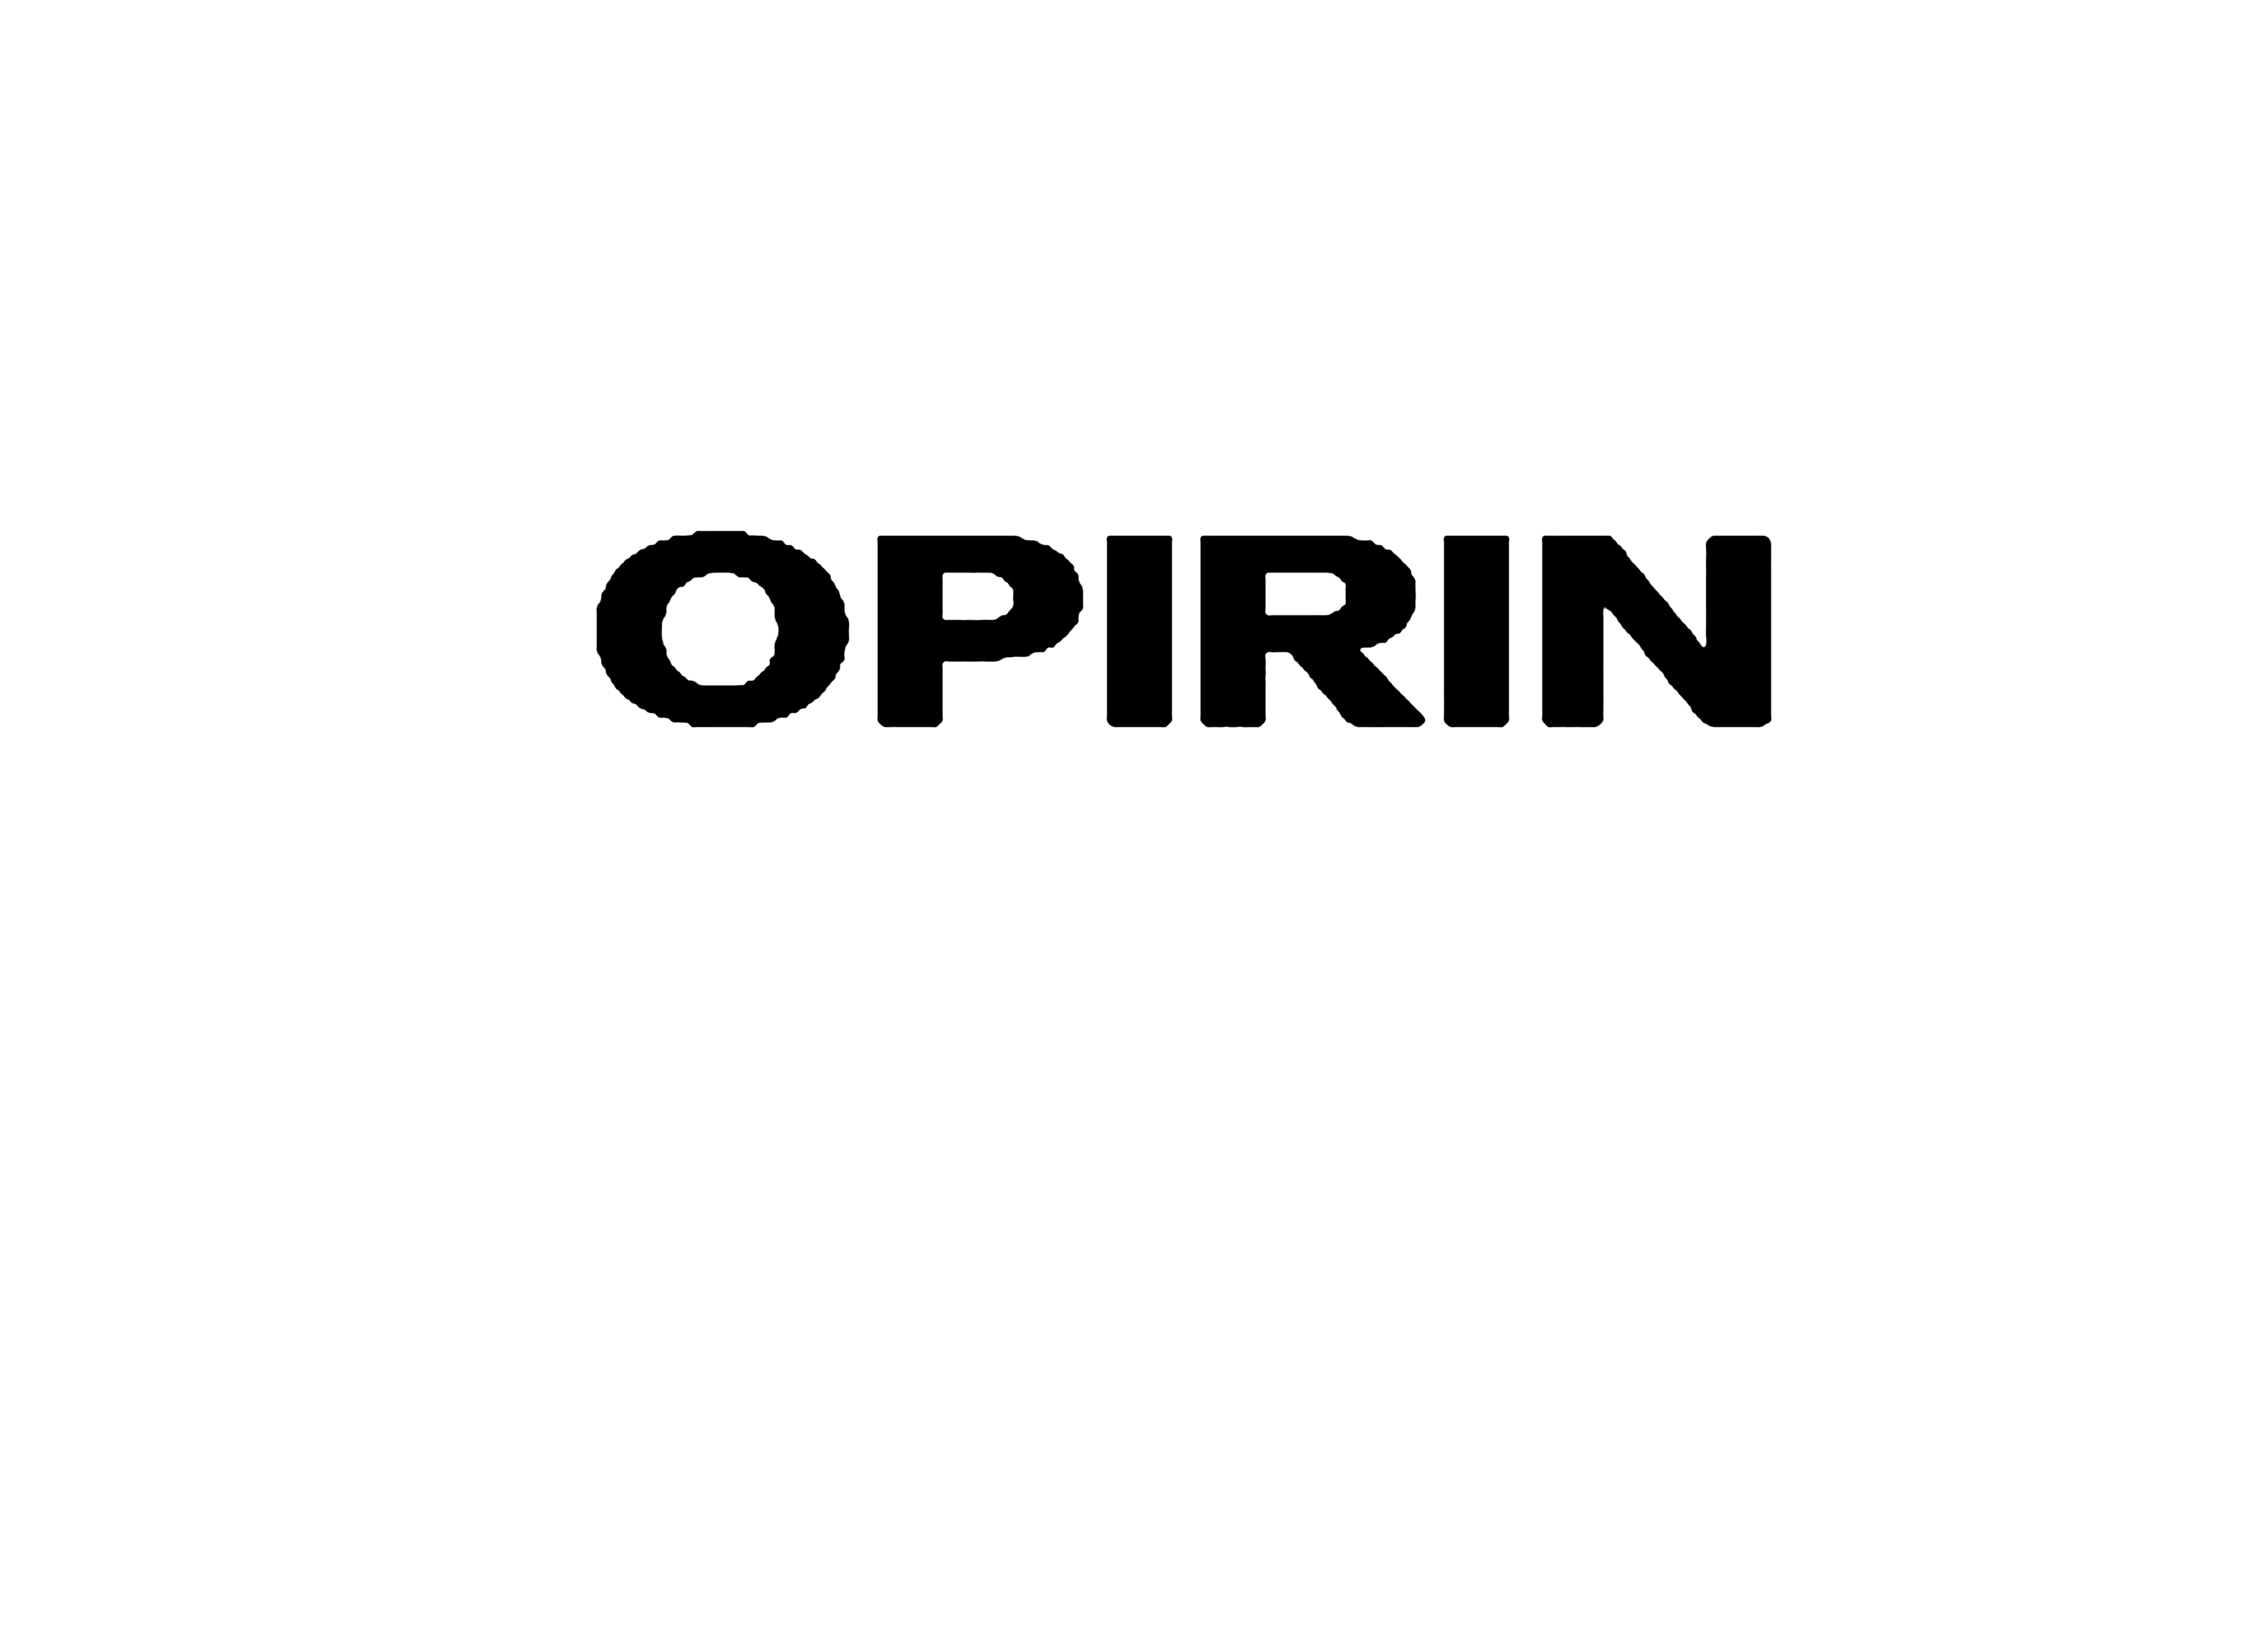 OPIRIN